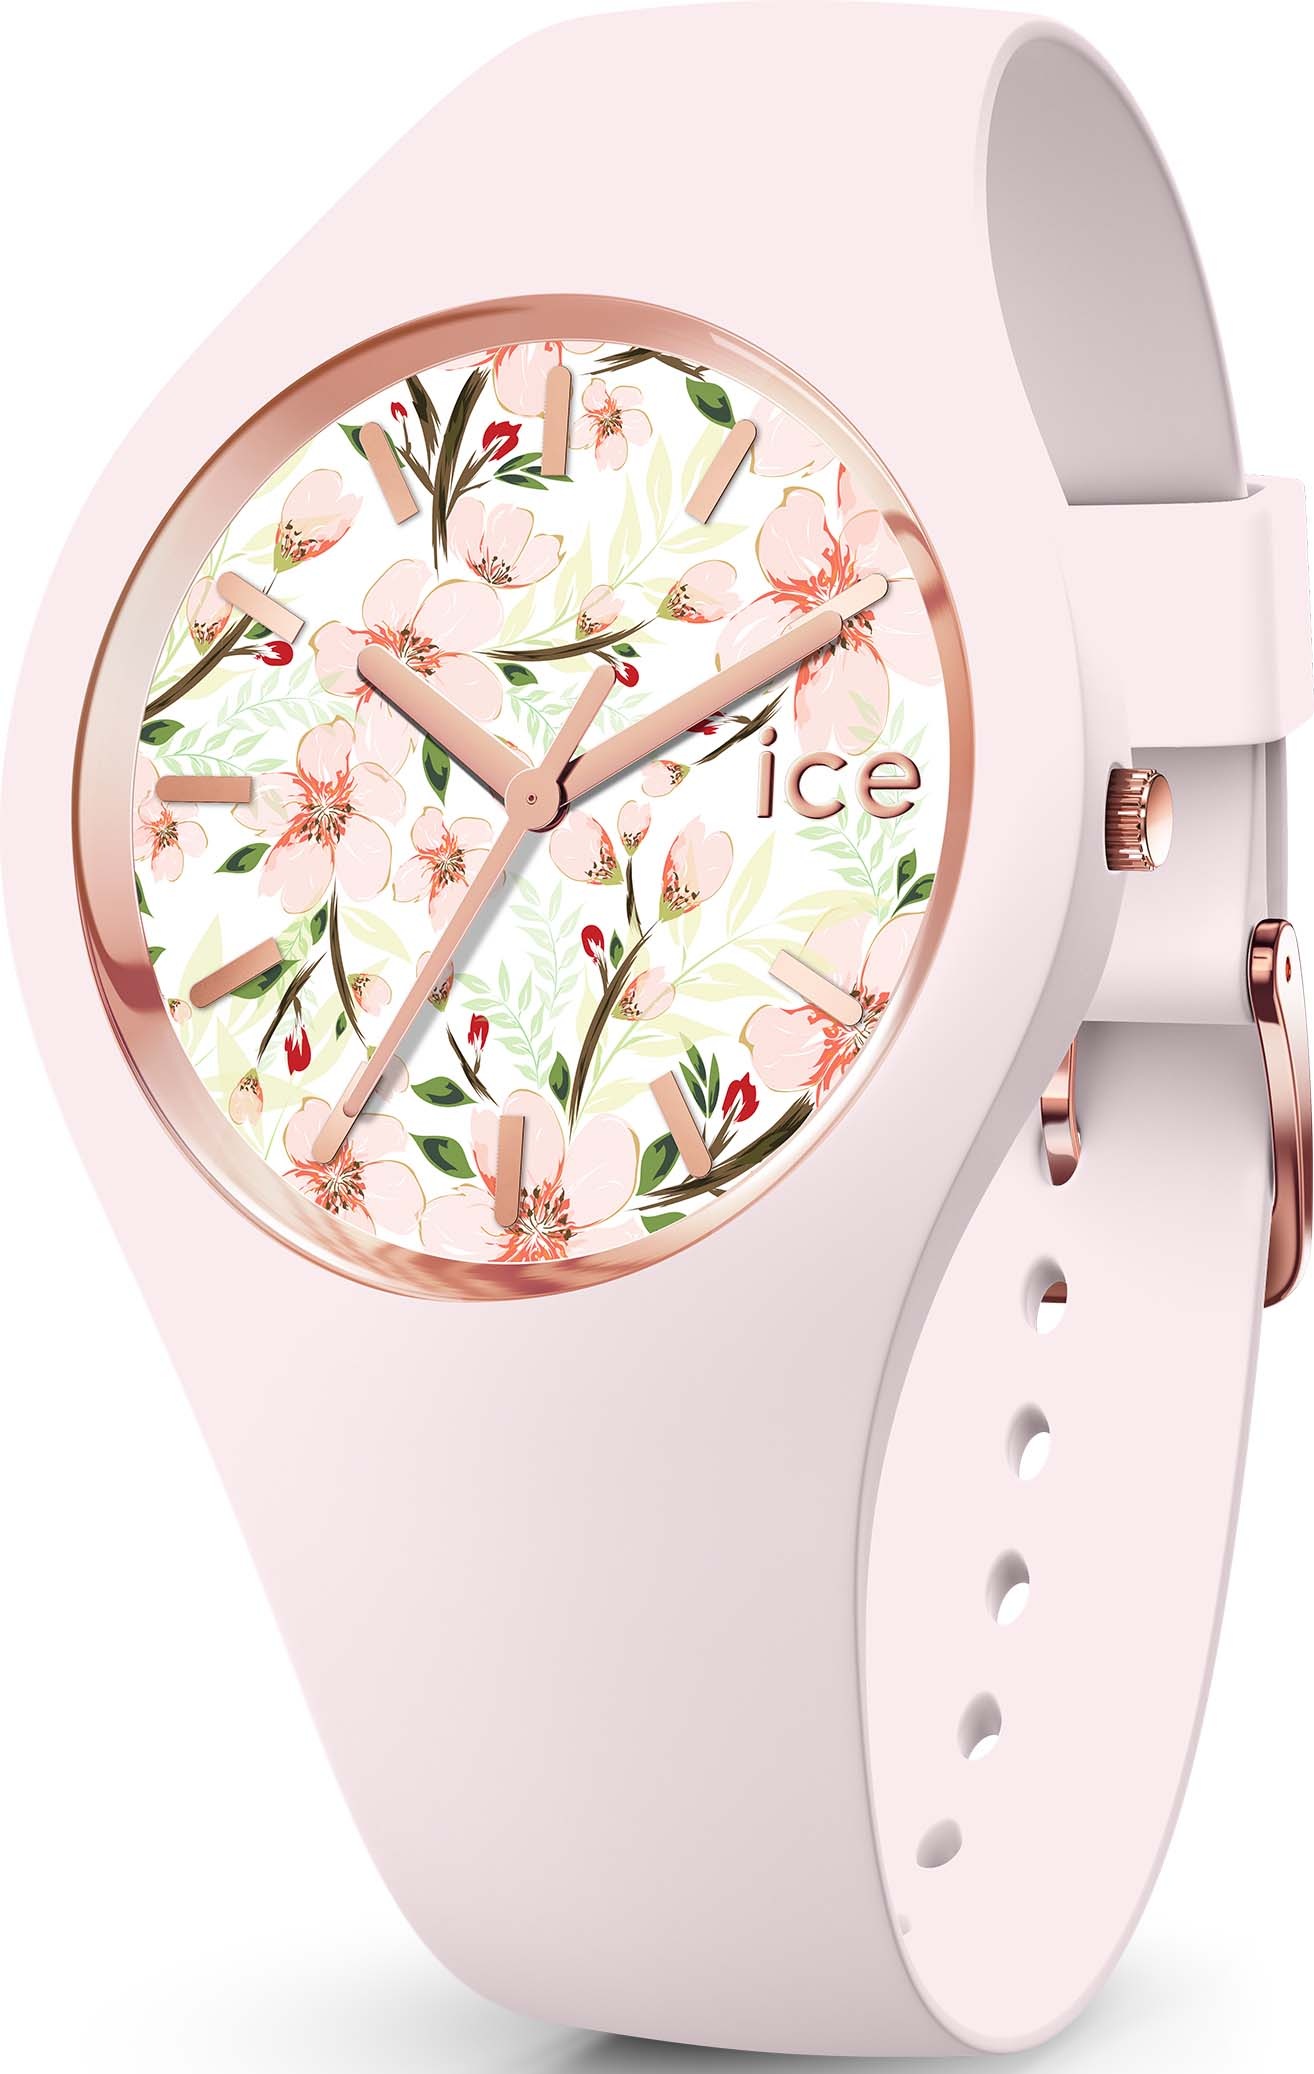 Ice-Watch online bestellen ▻